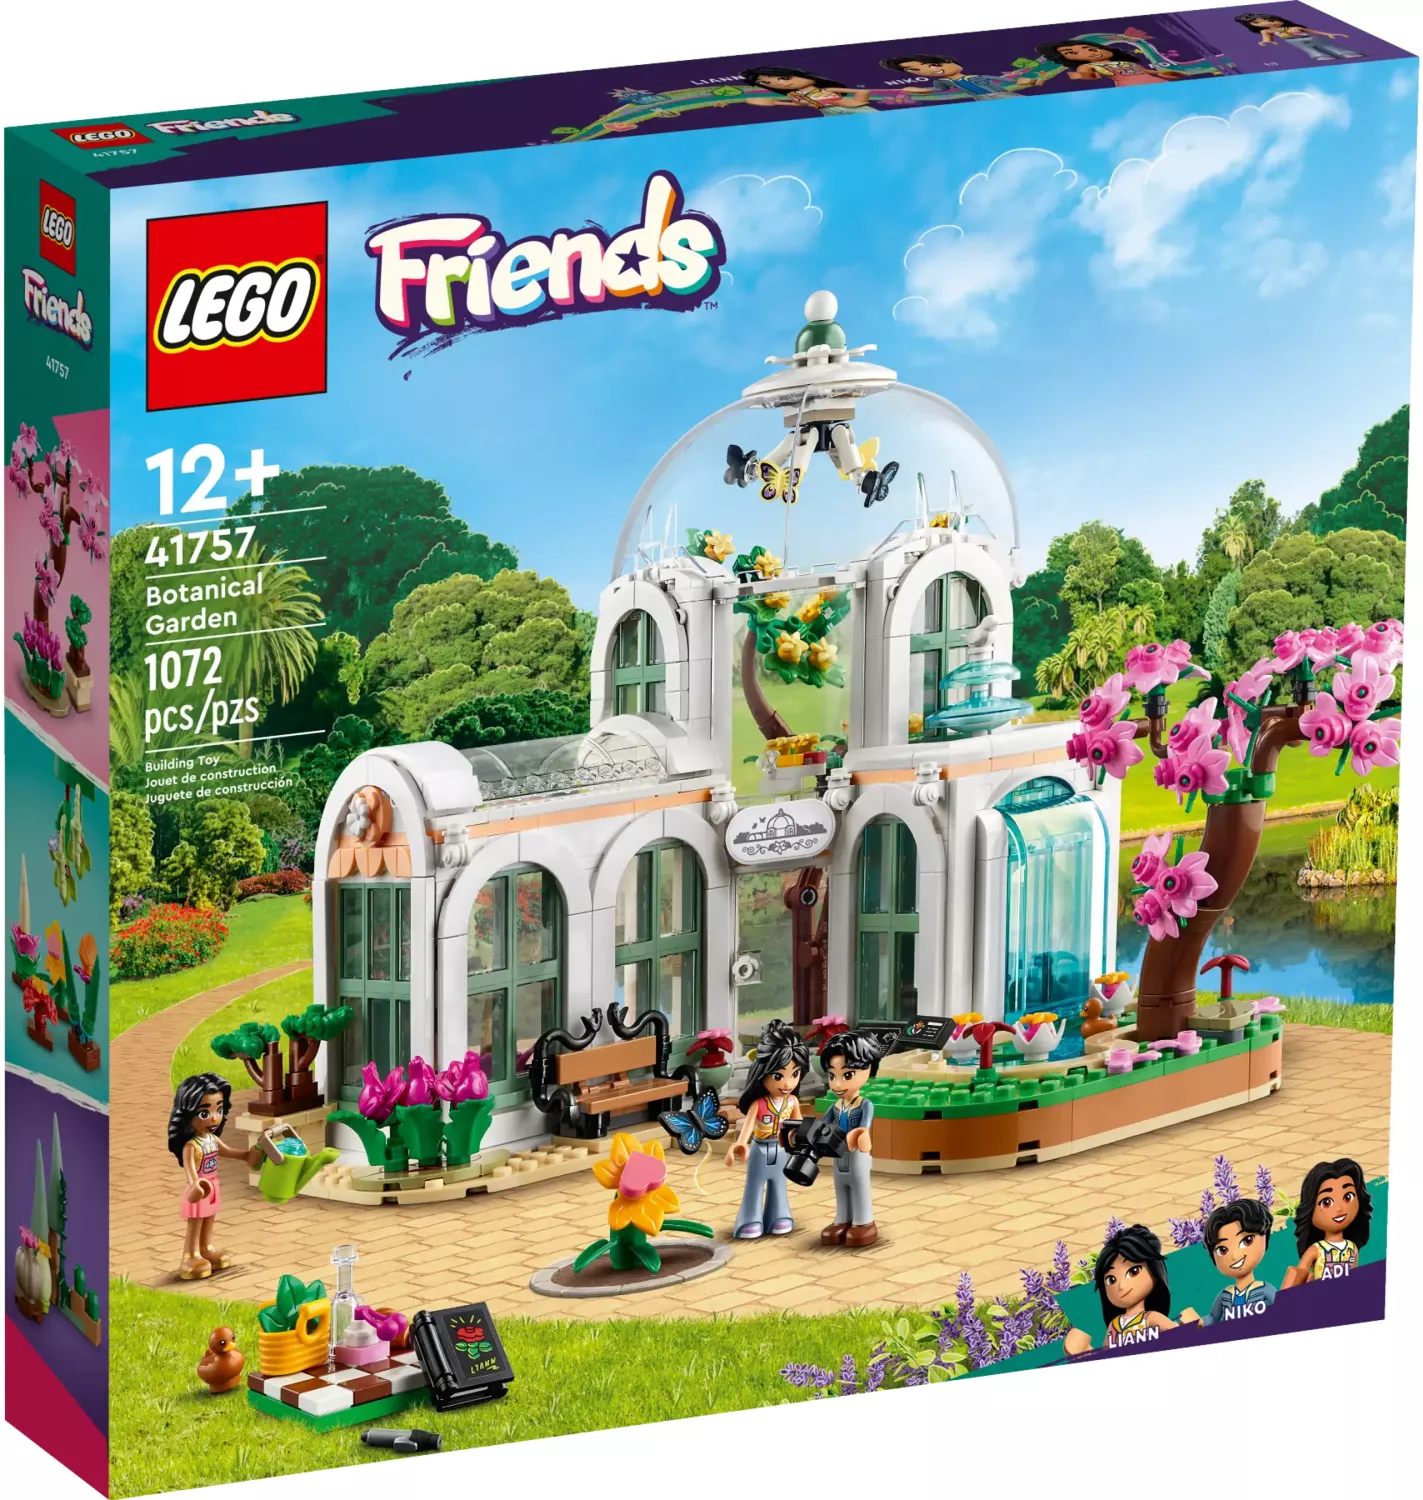 Lego Friends verschiedene Sets zum aussuchen - Neu & OVP